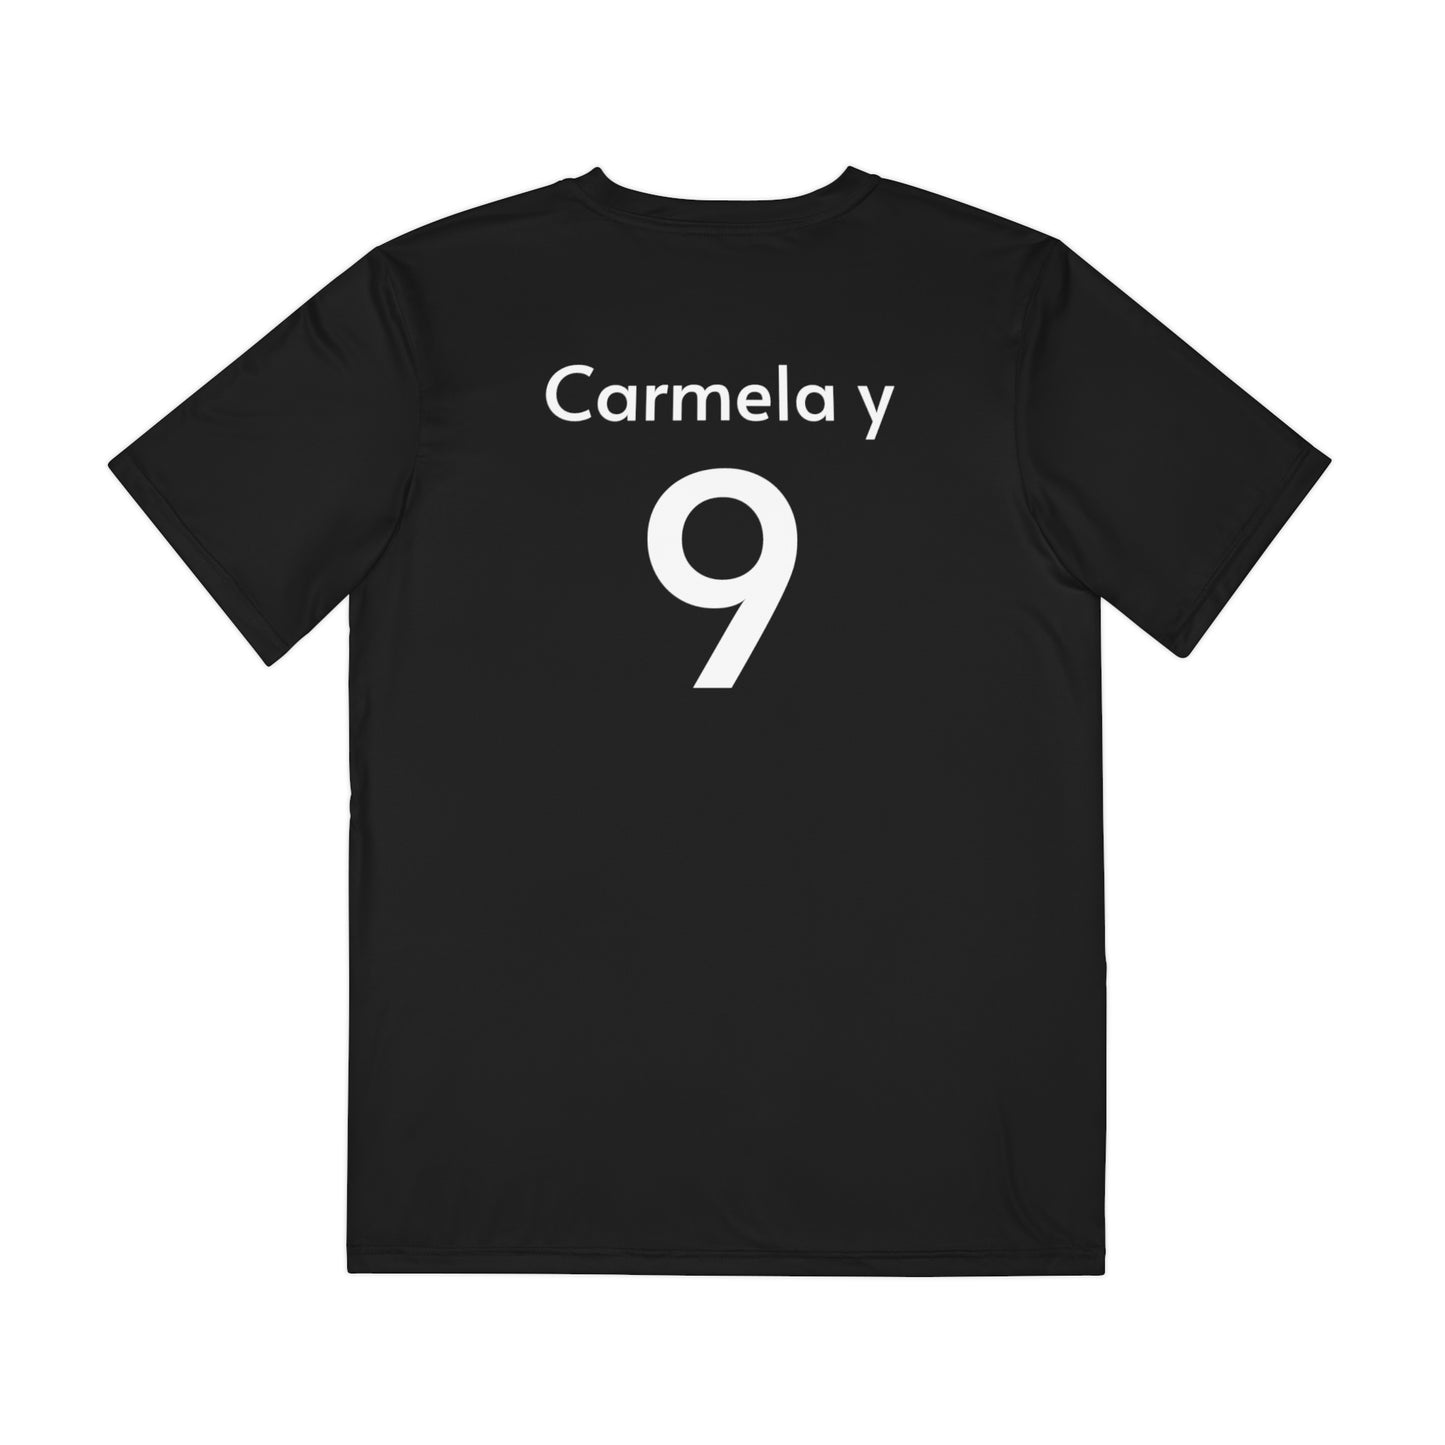 Carmela y Team Tshirt